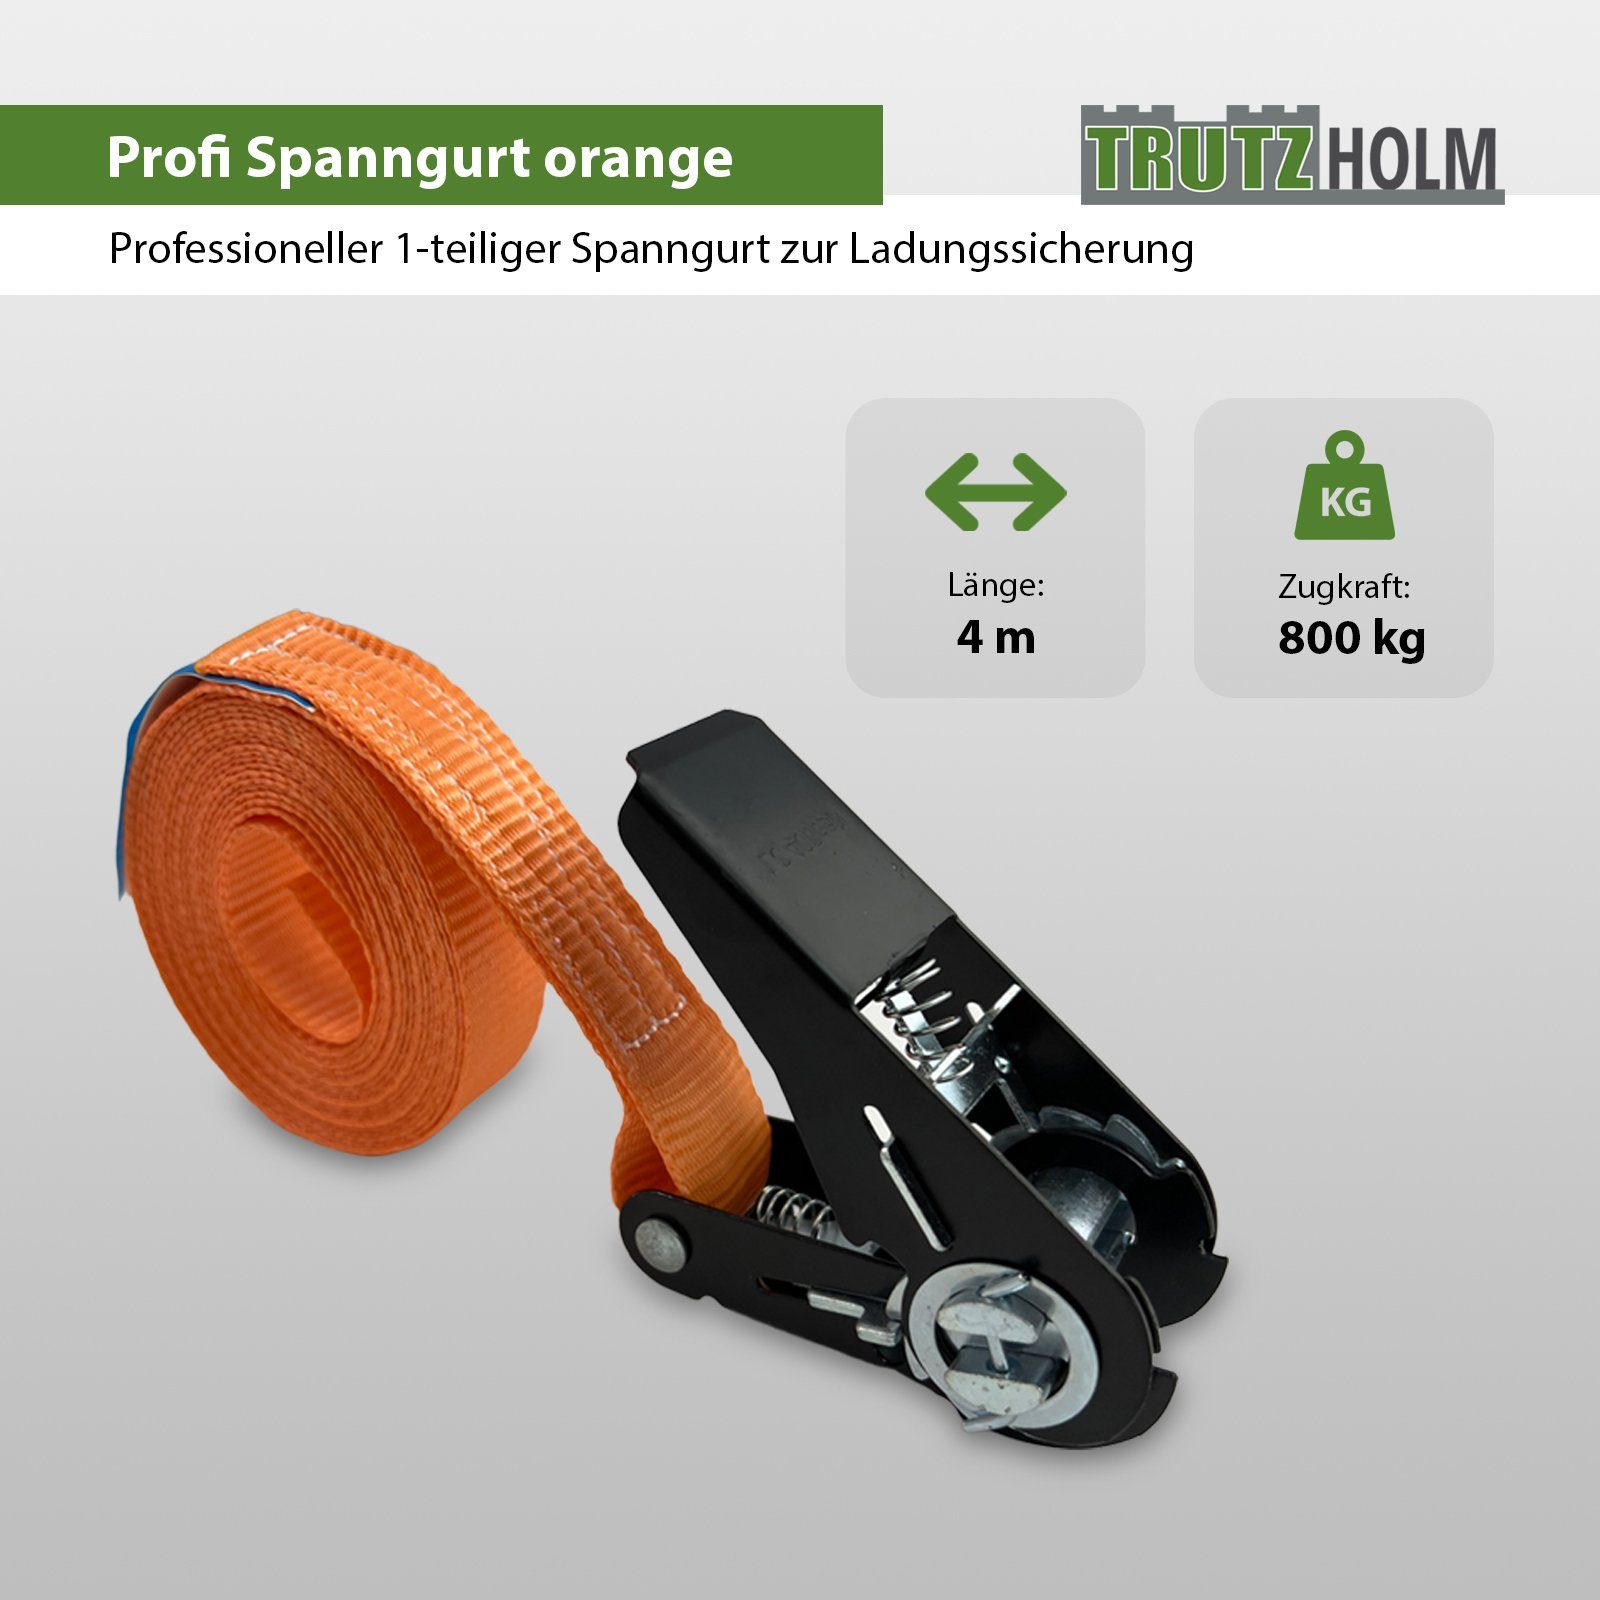 4m Spanngurt Orange Spanngurte Ratschen (Set) 0,8t Spanngurt 800kg 1-tlg TRUTZHOLM Schwarzes